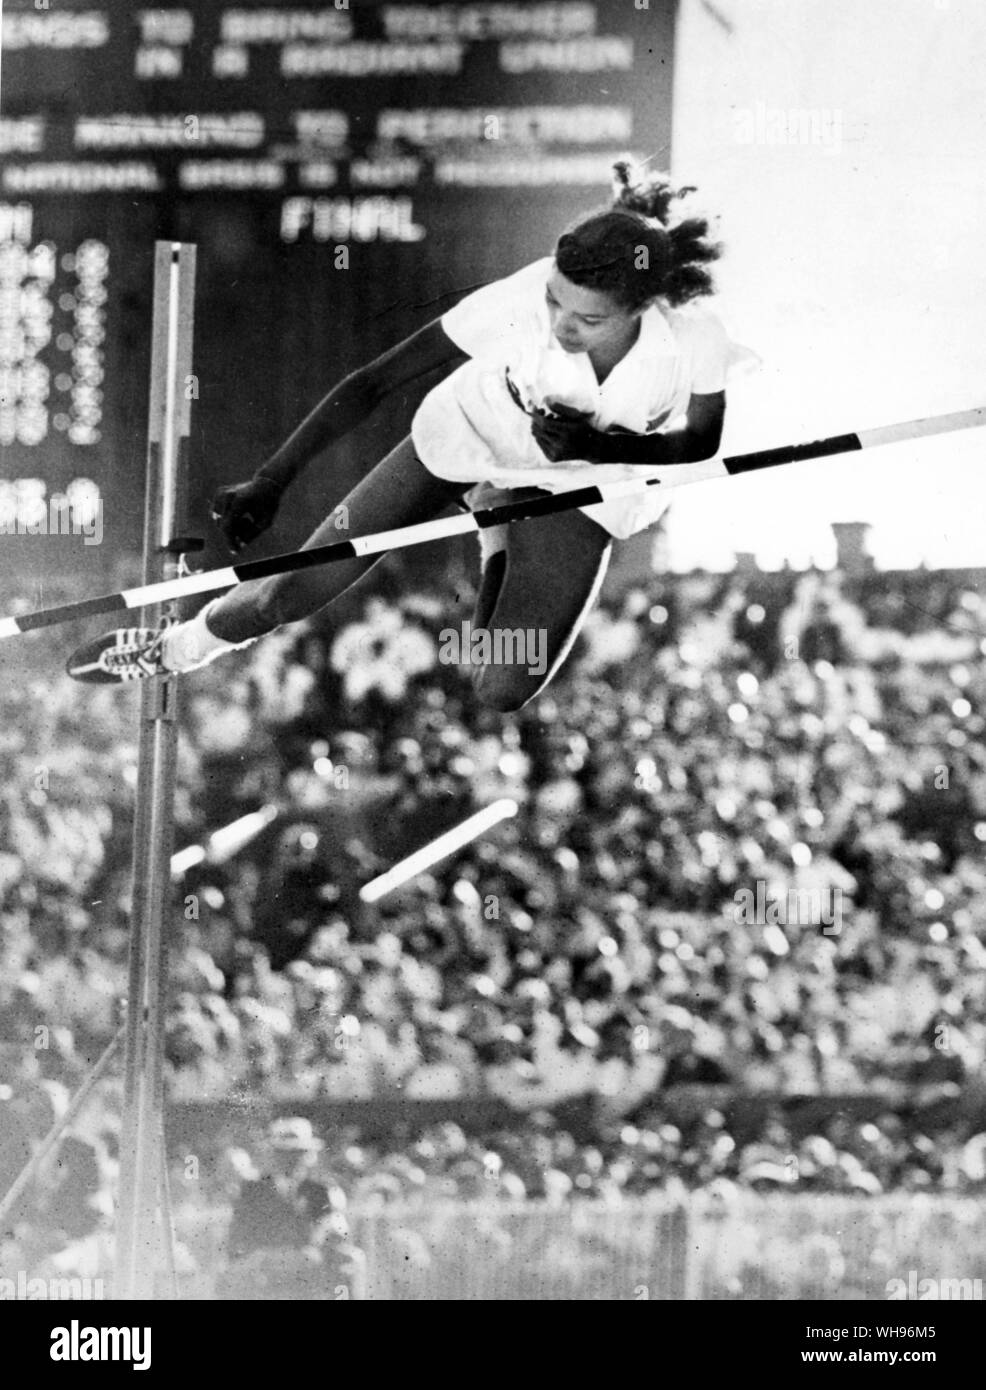 Aus., Melbourne, Olympics, 1956: Mildred McDaniel (USA) in die hohe Frauen springen. Sie gewann die Goldmedaille. Stockfoto